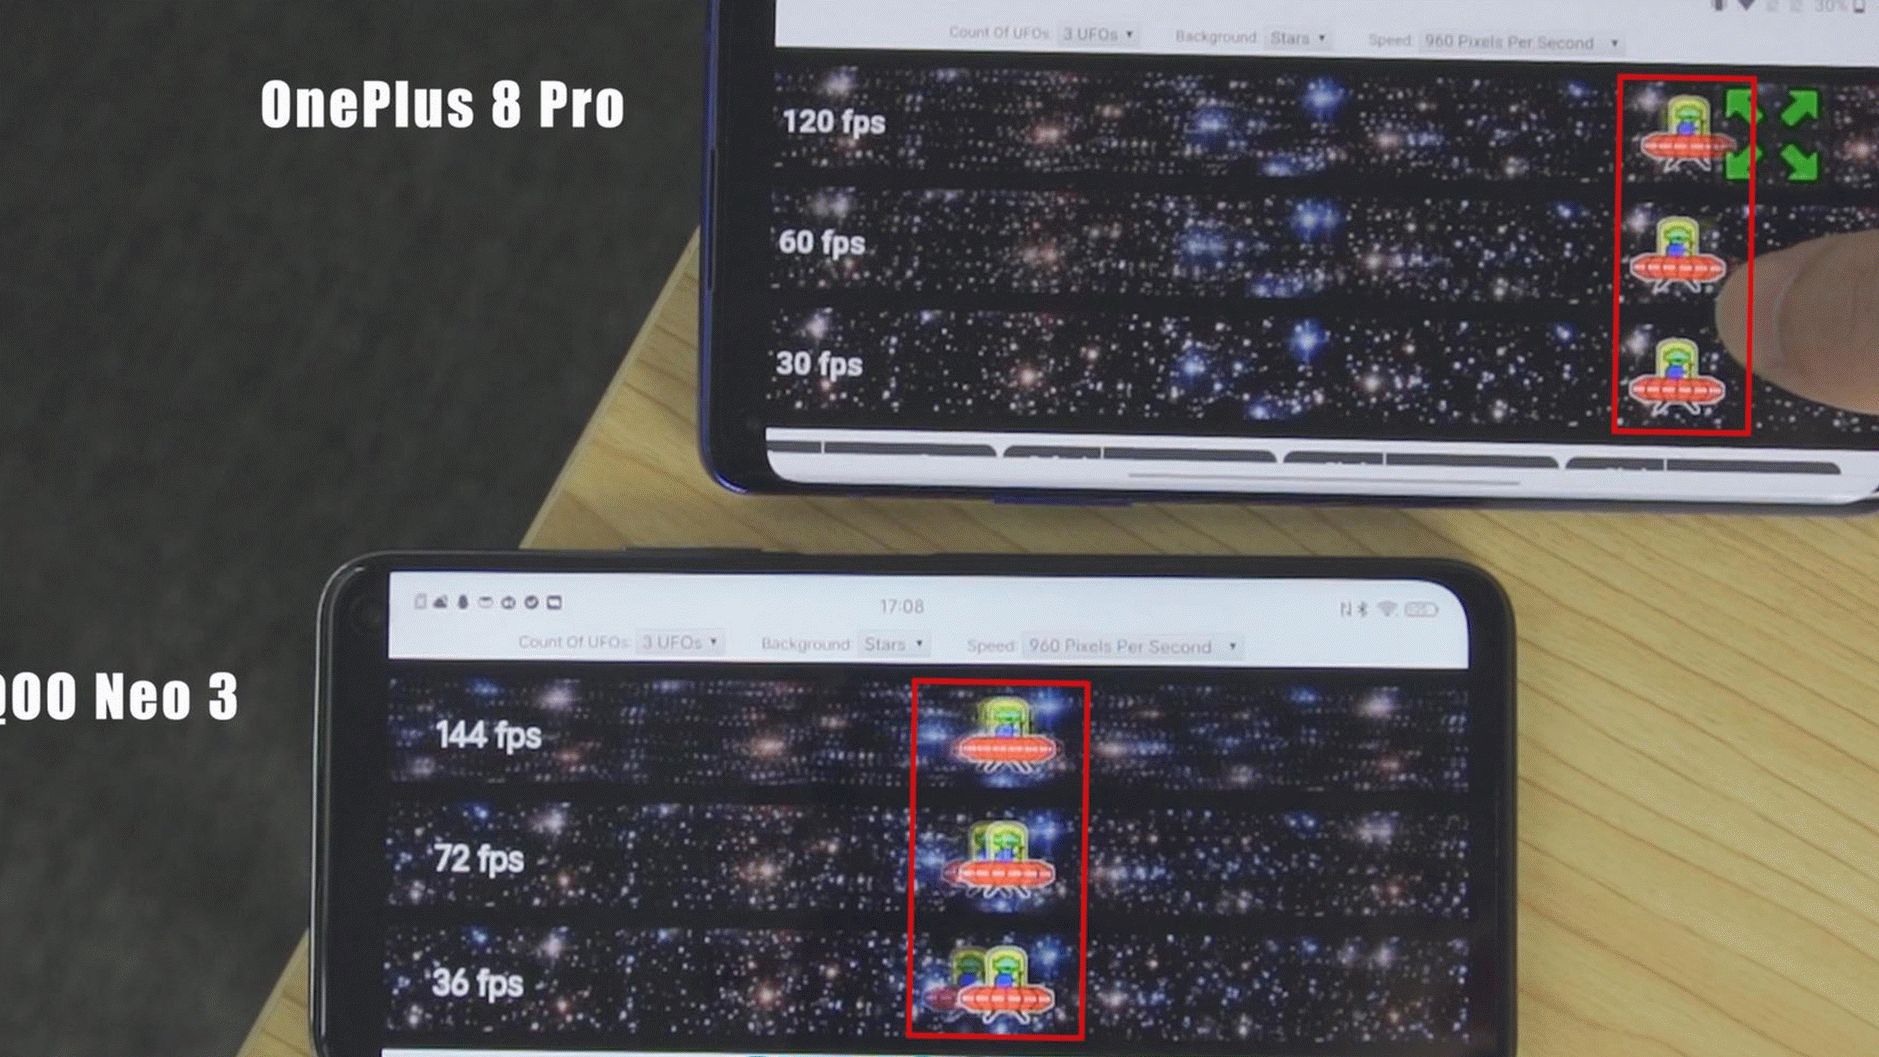 OnePlus 8 Pro vs iQOO Neo 3 destacado (9)